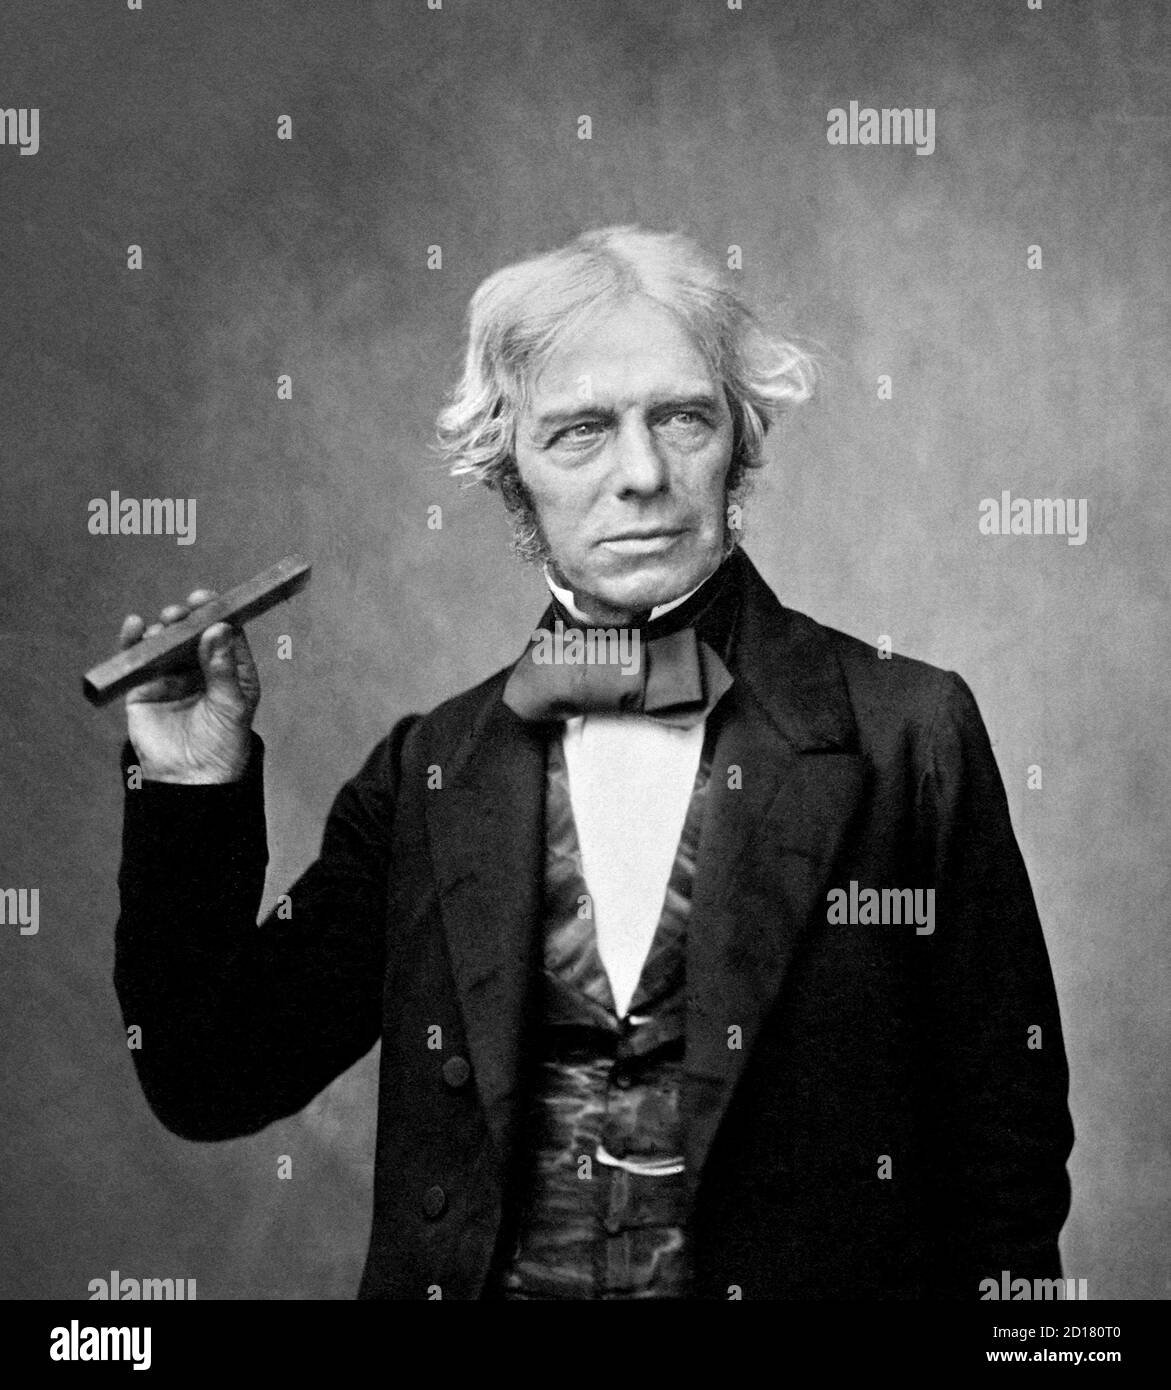 Michael Faraday (1791-1867), ritratto di Maull & Polyblank, 1857. Faraday fu uno scienziato inglese che contribuì allo studio dell'elettromagnetismo e dell'elettrochimica. Le sue scoperte principali includono i principi alla base dell'induzione elettromagnetica, del diamagnetismo e dell'elettrolisi. Michael Faraday tenendo una barra di vetro del tipo che usava per mostrare che il magnetismo influenza la luce Foto Stock